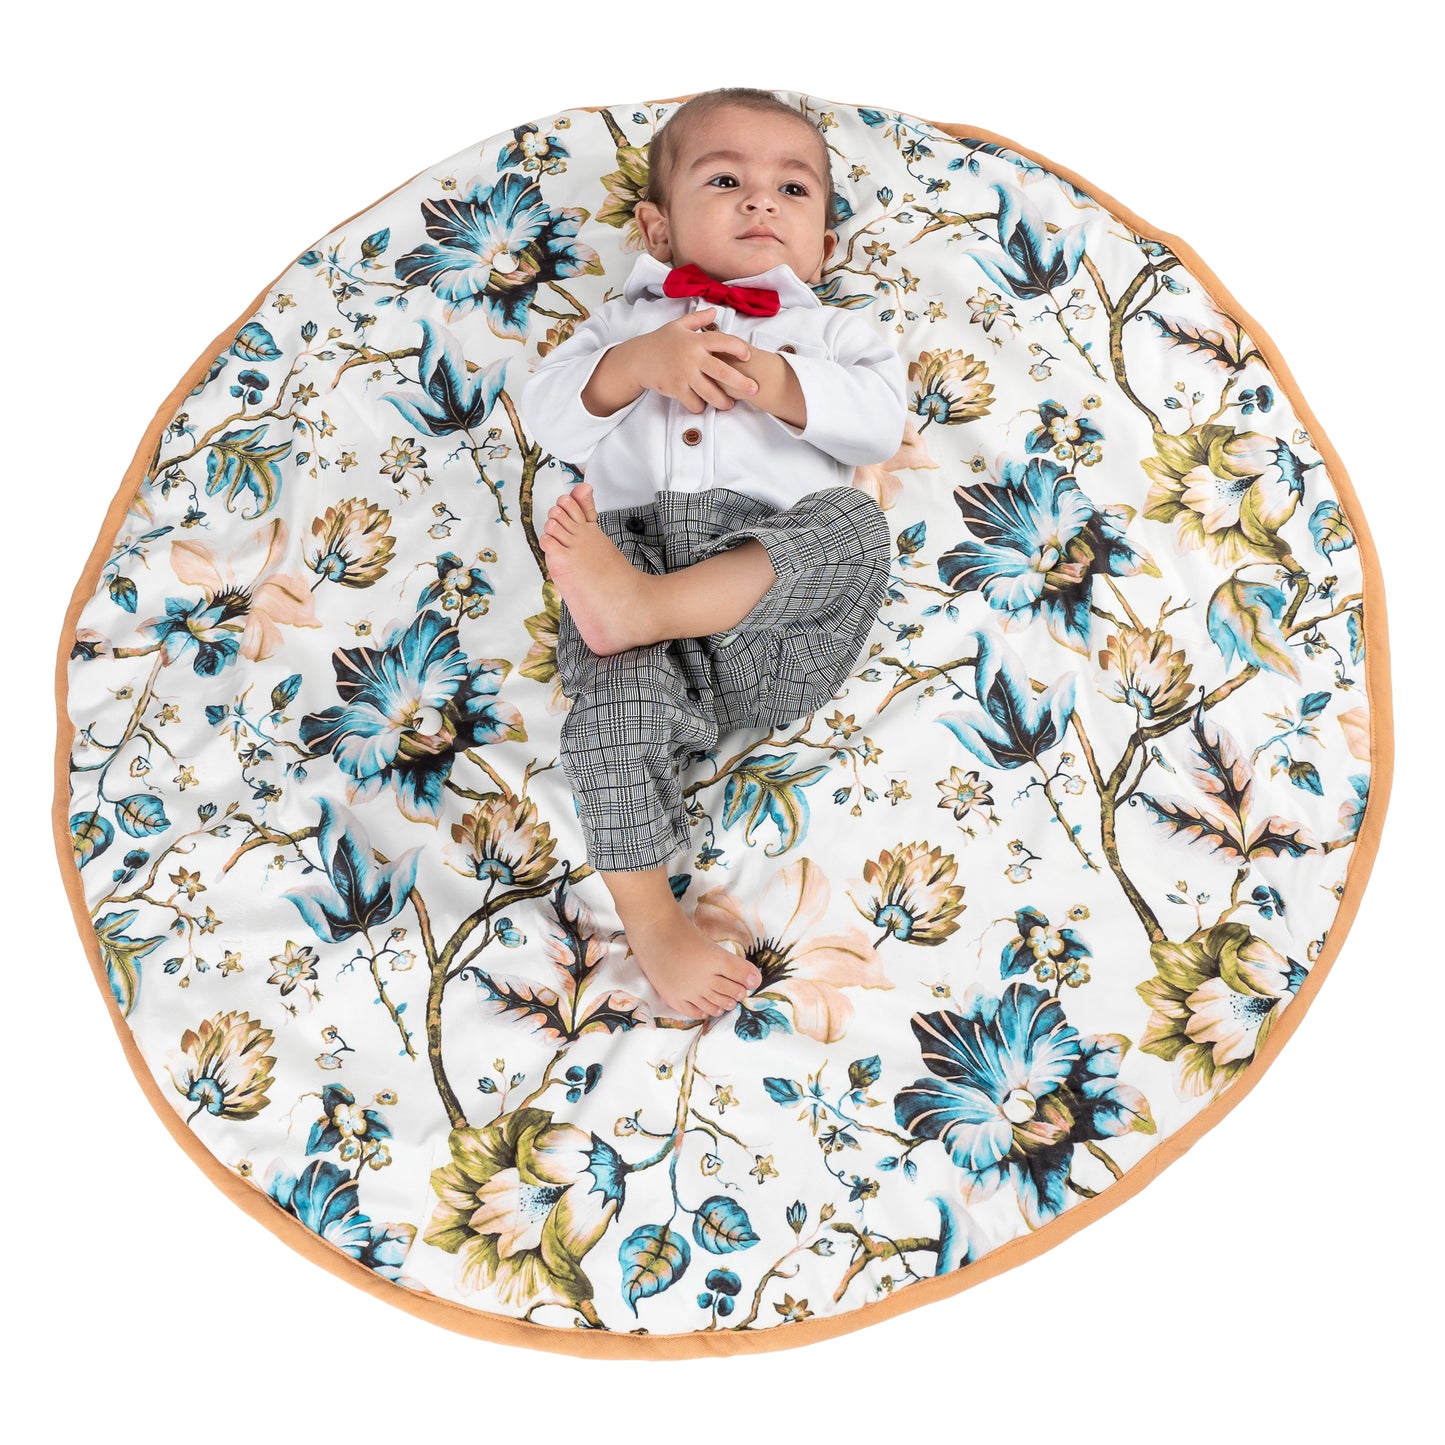 NUEVOSGHAR Digital Printed Velvet Round Shaped Baby Mattress Blue/White (0-24 Months)